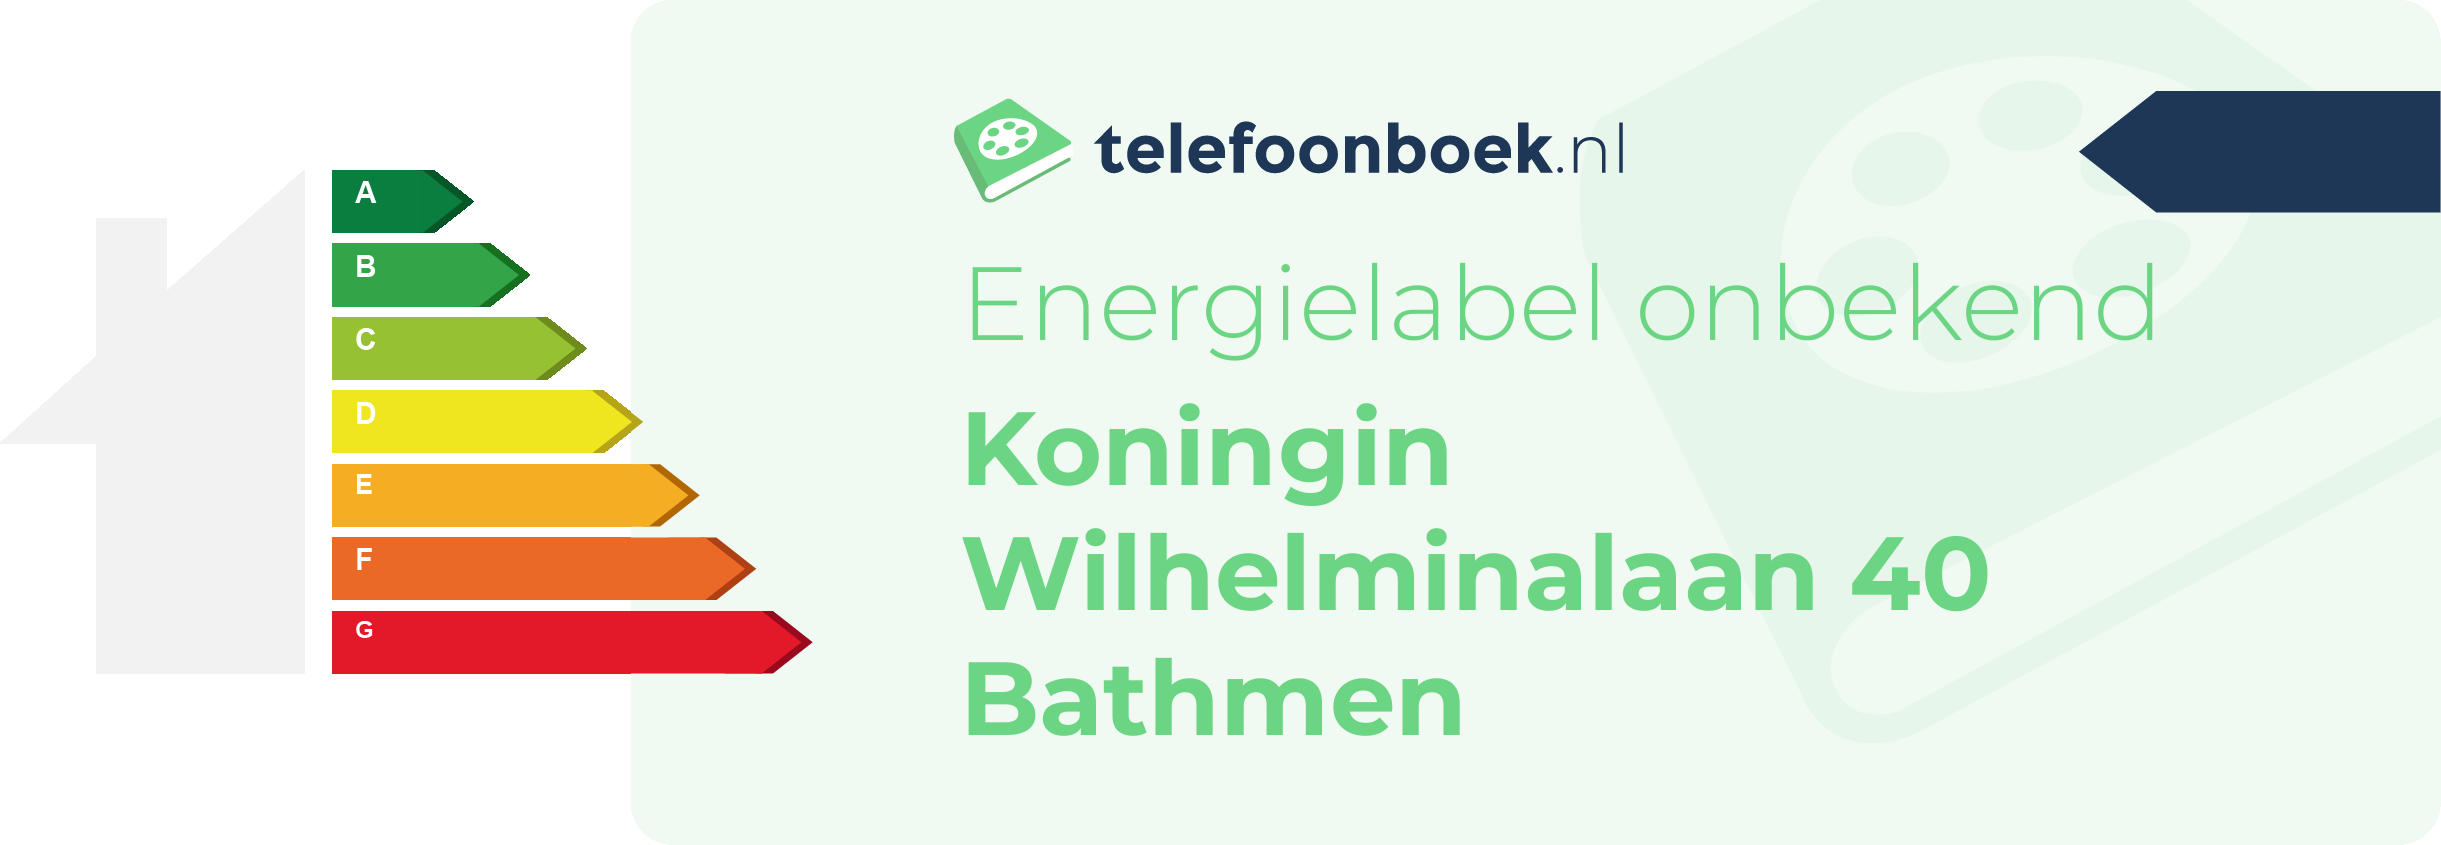 Energielabel Koningin Wilhelminalaan 40 Bathmen